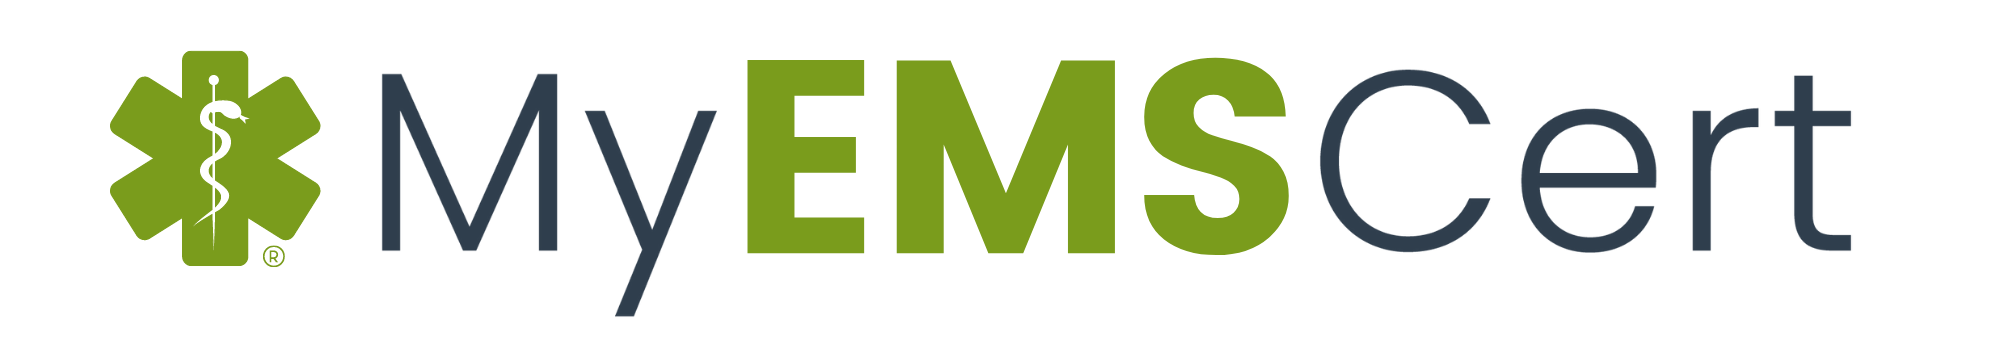 MyEMSCert Logo (4) - Copy